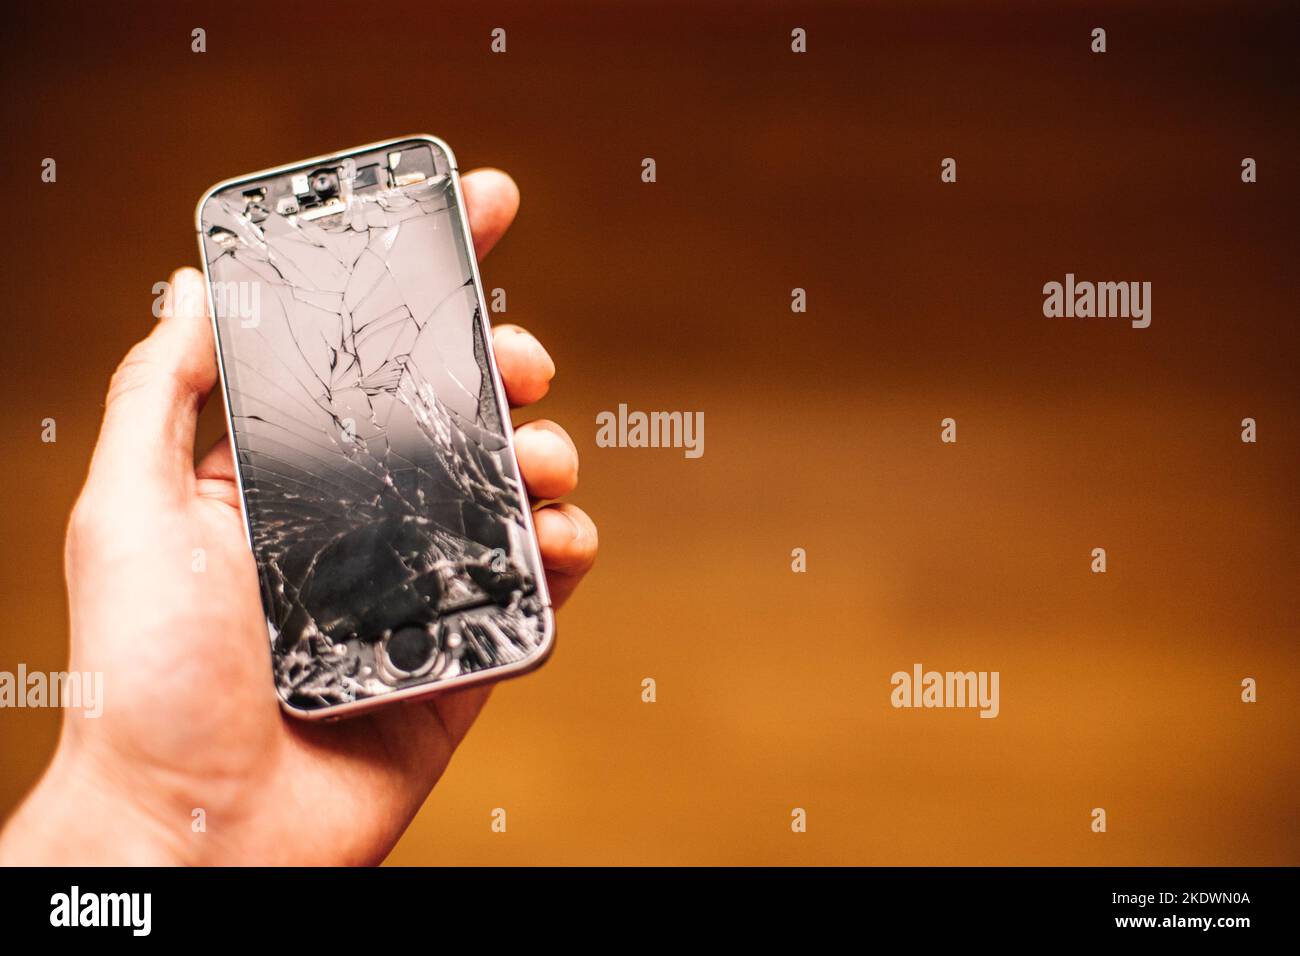 Persona que sostiene en la mano smartphone roto con la pantalla agrietada Foto de stock